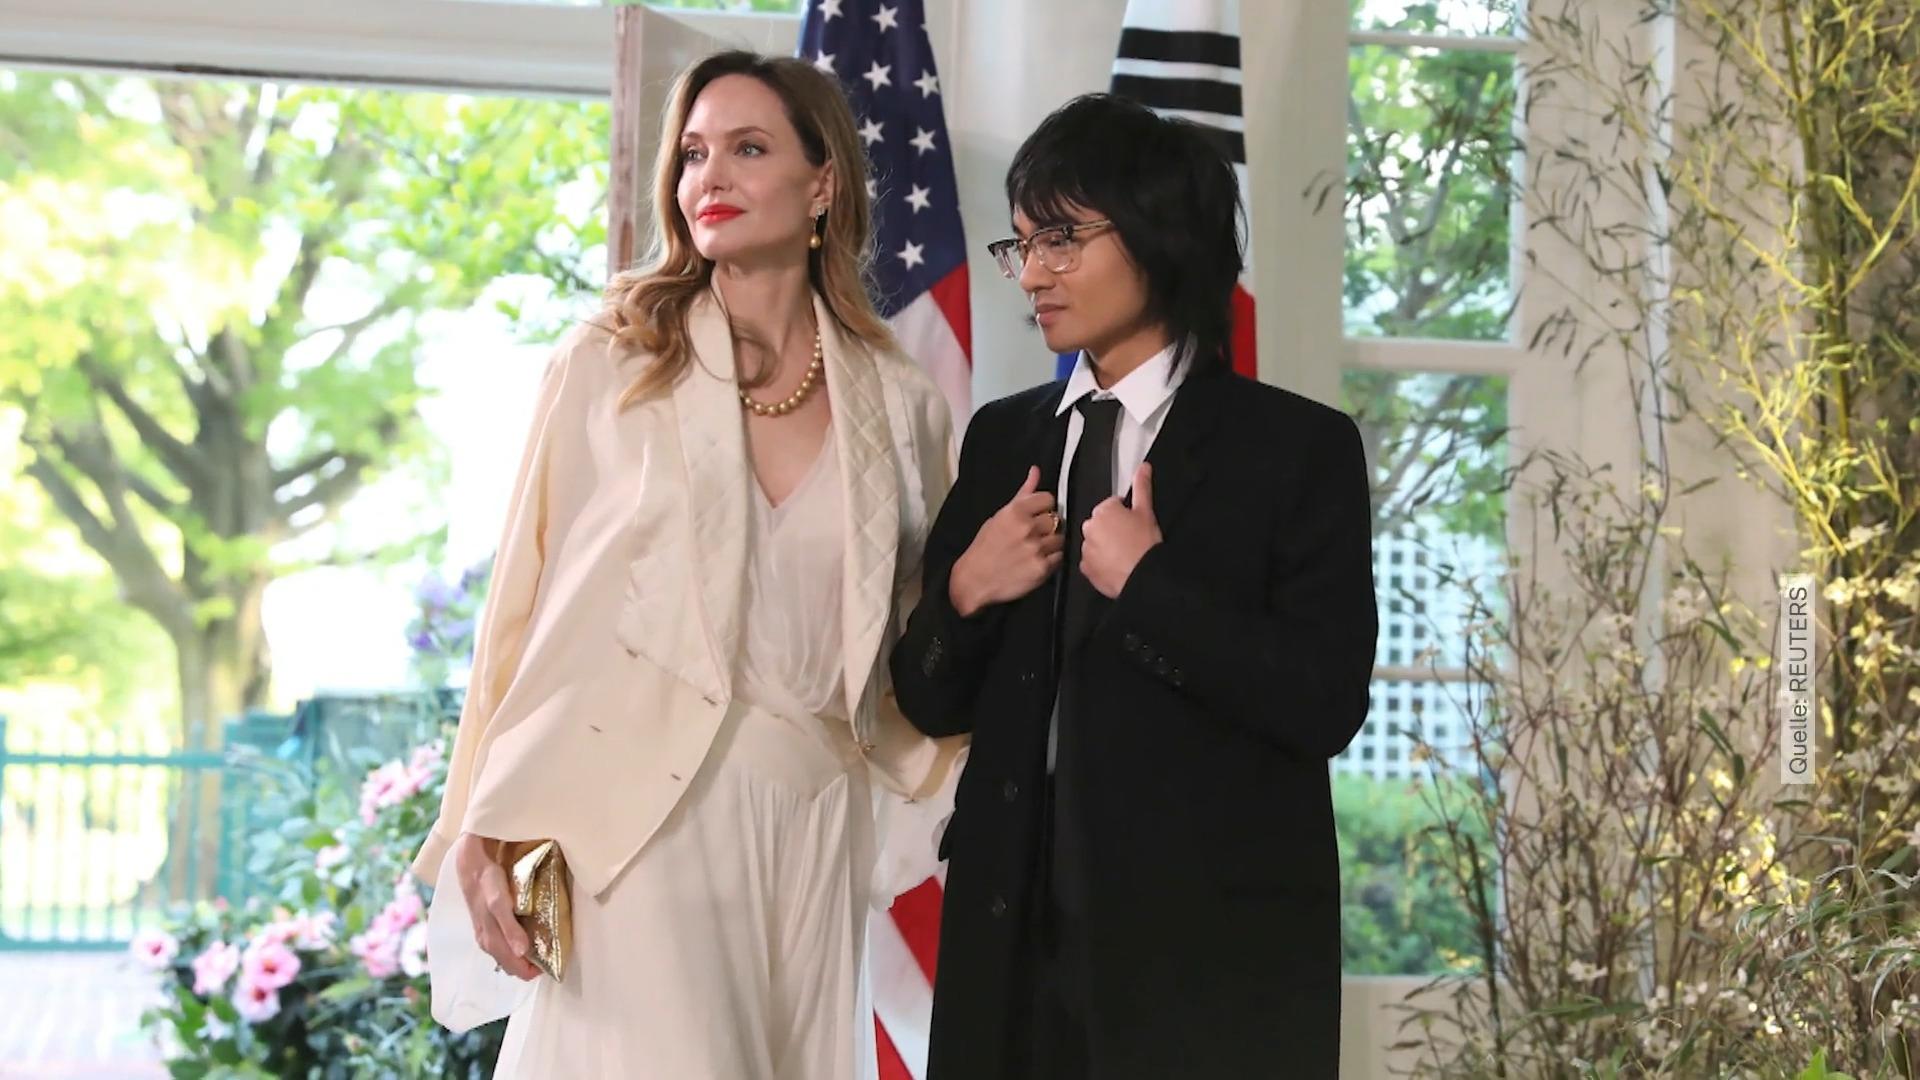 Angelina Jolie erscheint mit Sohn Maddox bei Bankett Total selten!